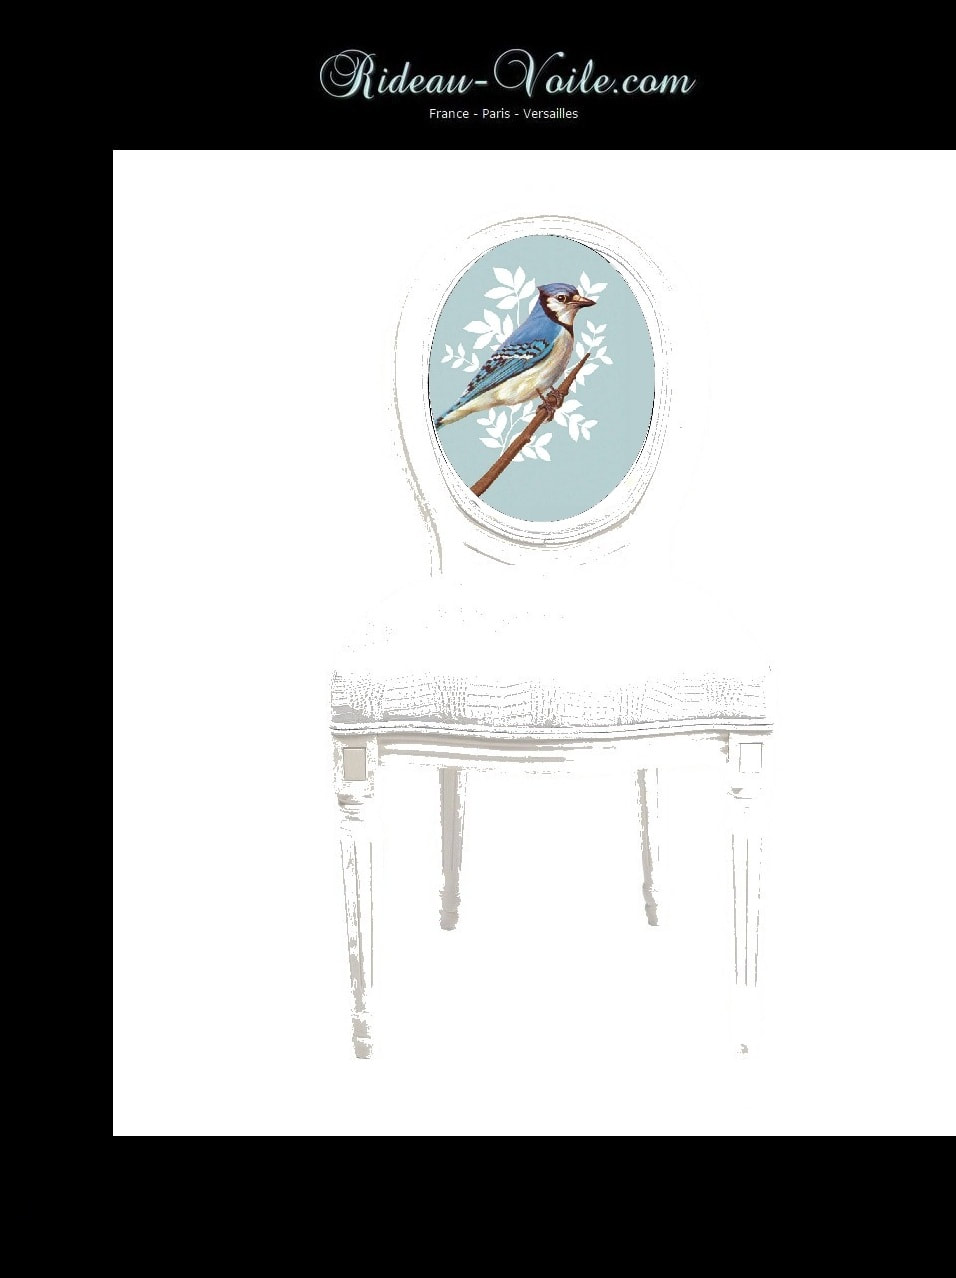 siège cabriolet de style louis 16 xvi XVI Empire décoration fauteuil chaise tissu tapisserie motif oiseaux tapissier médaillon bois hêtre ameublement lin coton dossier assise Paris Versailles France